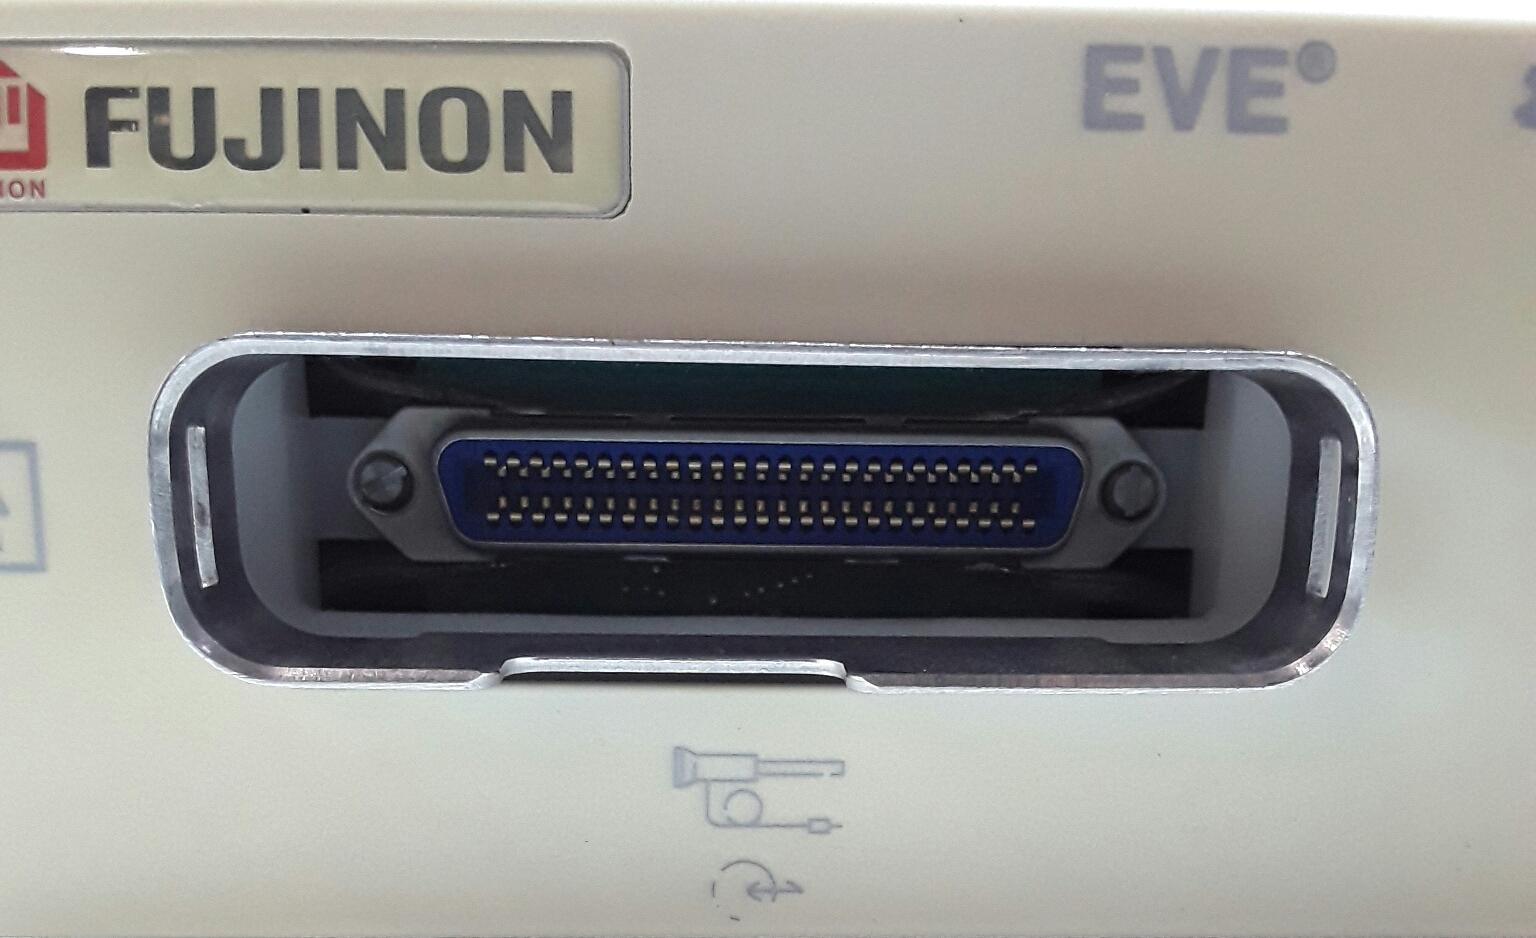 FUJINON EVE E400 IU-402 Interface Unit